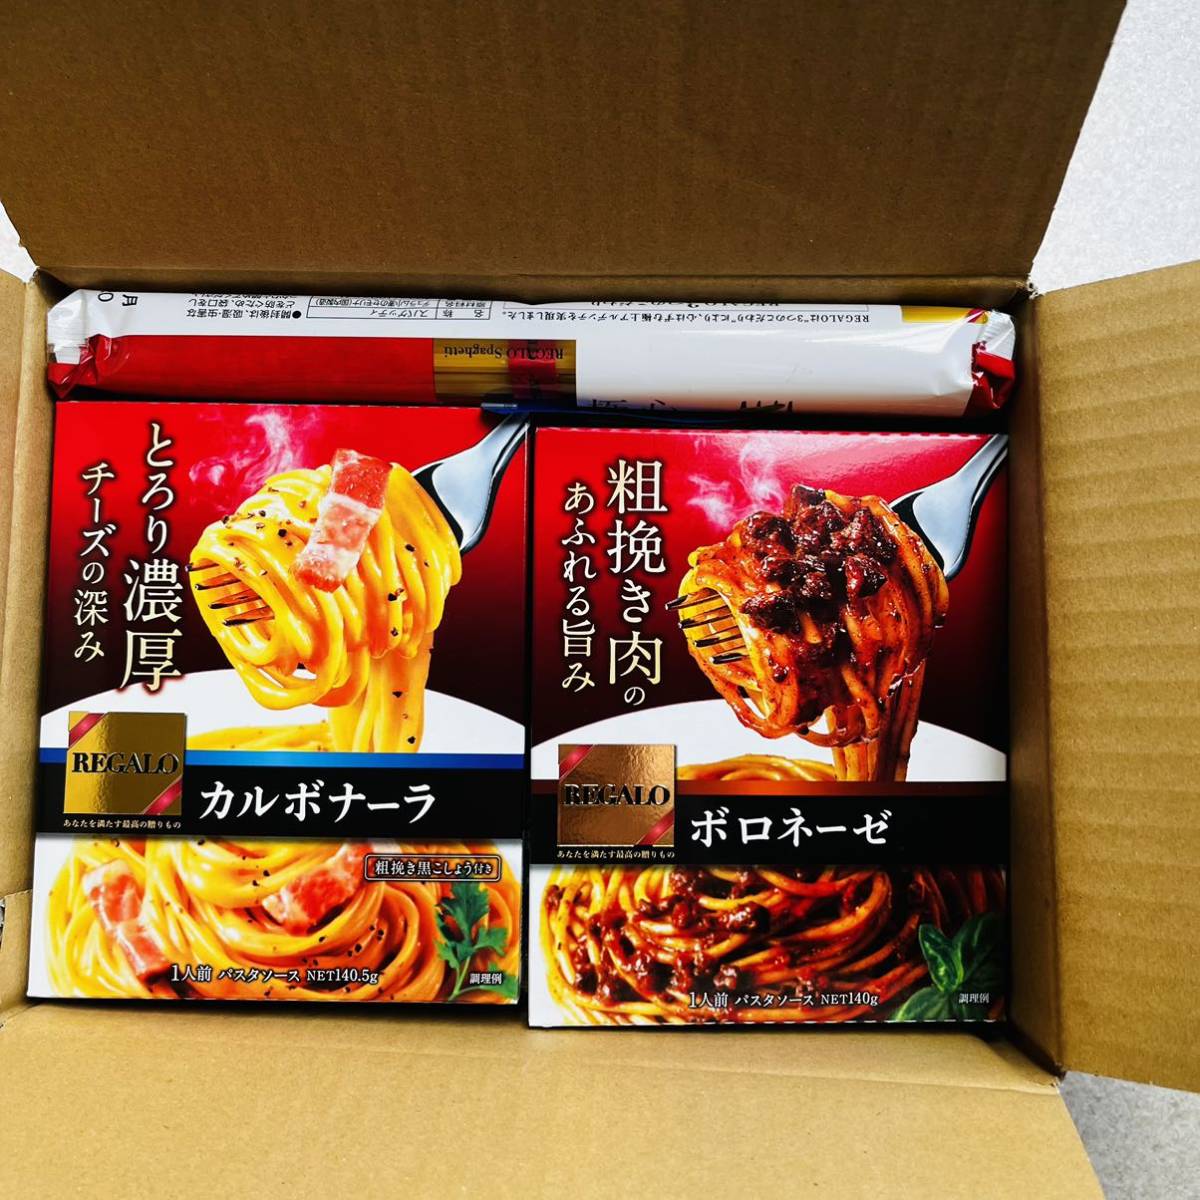 nipn сделано в Японии мука акционер гостеприимство * пищевые ингредиенты набор 7 пункт * пшеничная мука REGALOspageti макароны соус ahi-jo. элемент * быстрое решение возможно 